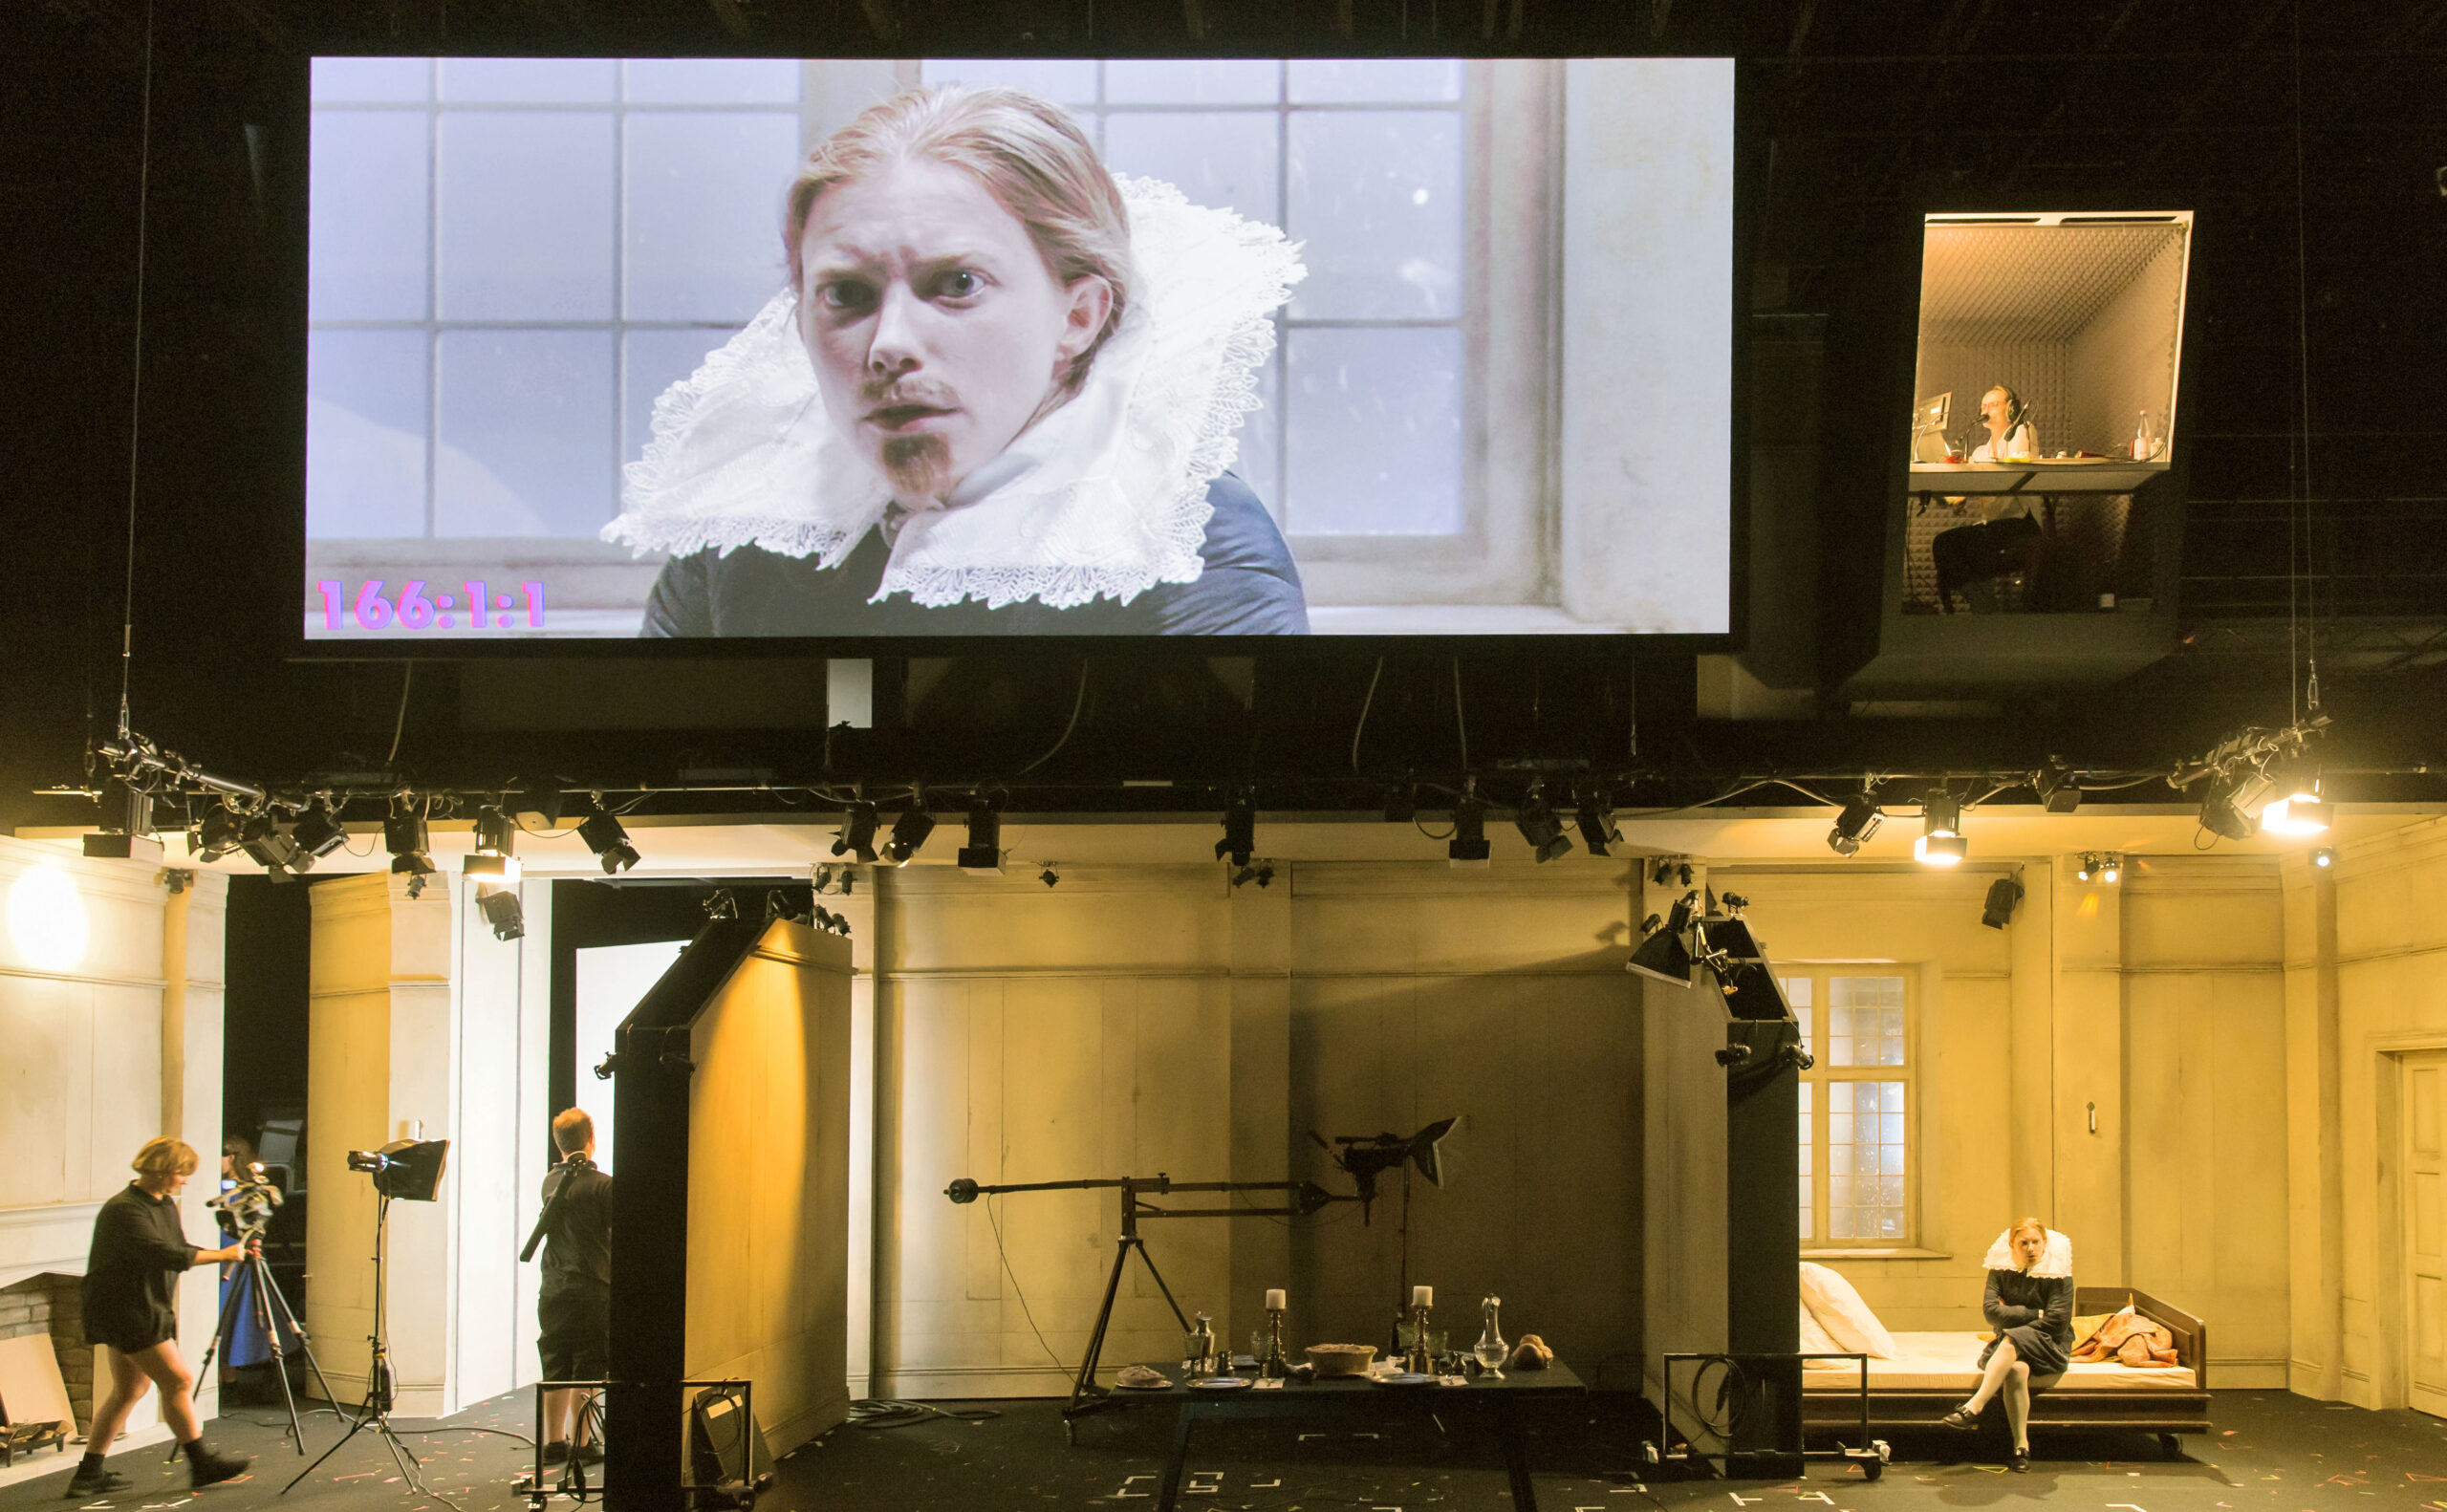 Orlando im Monolog auf einem Screen, darunter zu sehen sind die Bühnenbilder mit einzelnen Räumen und der Videoausstattung.